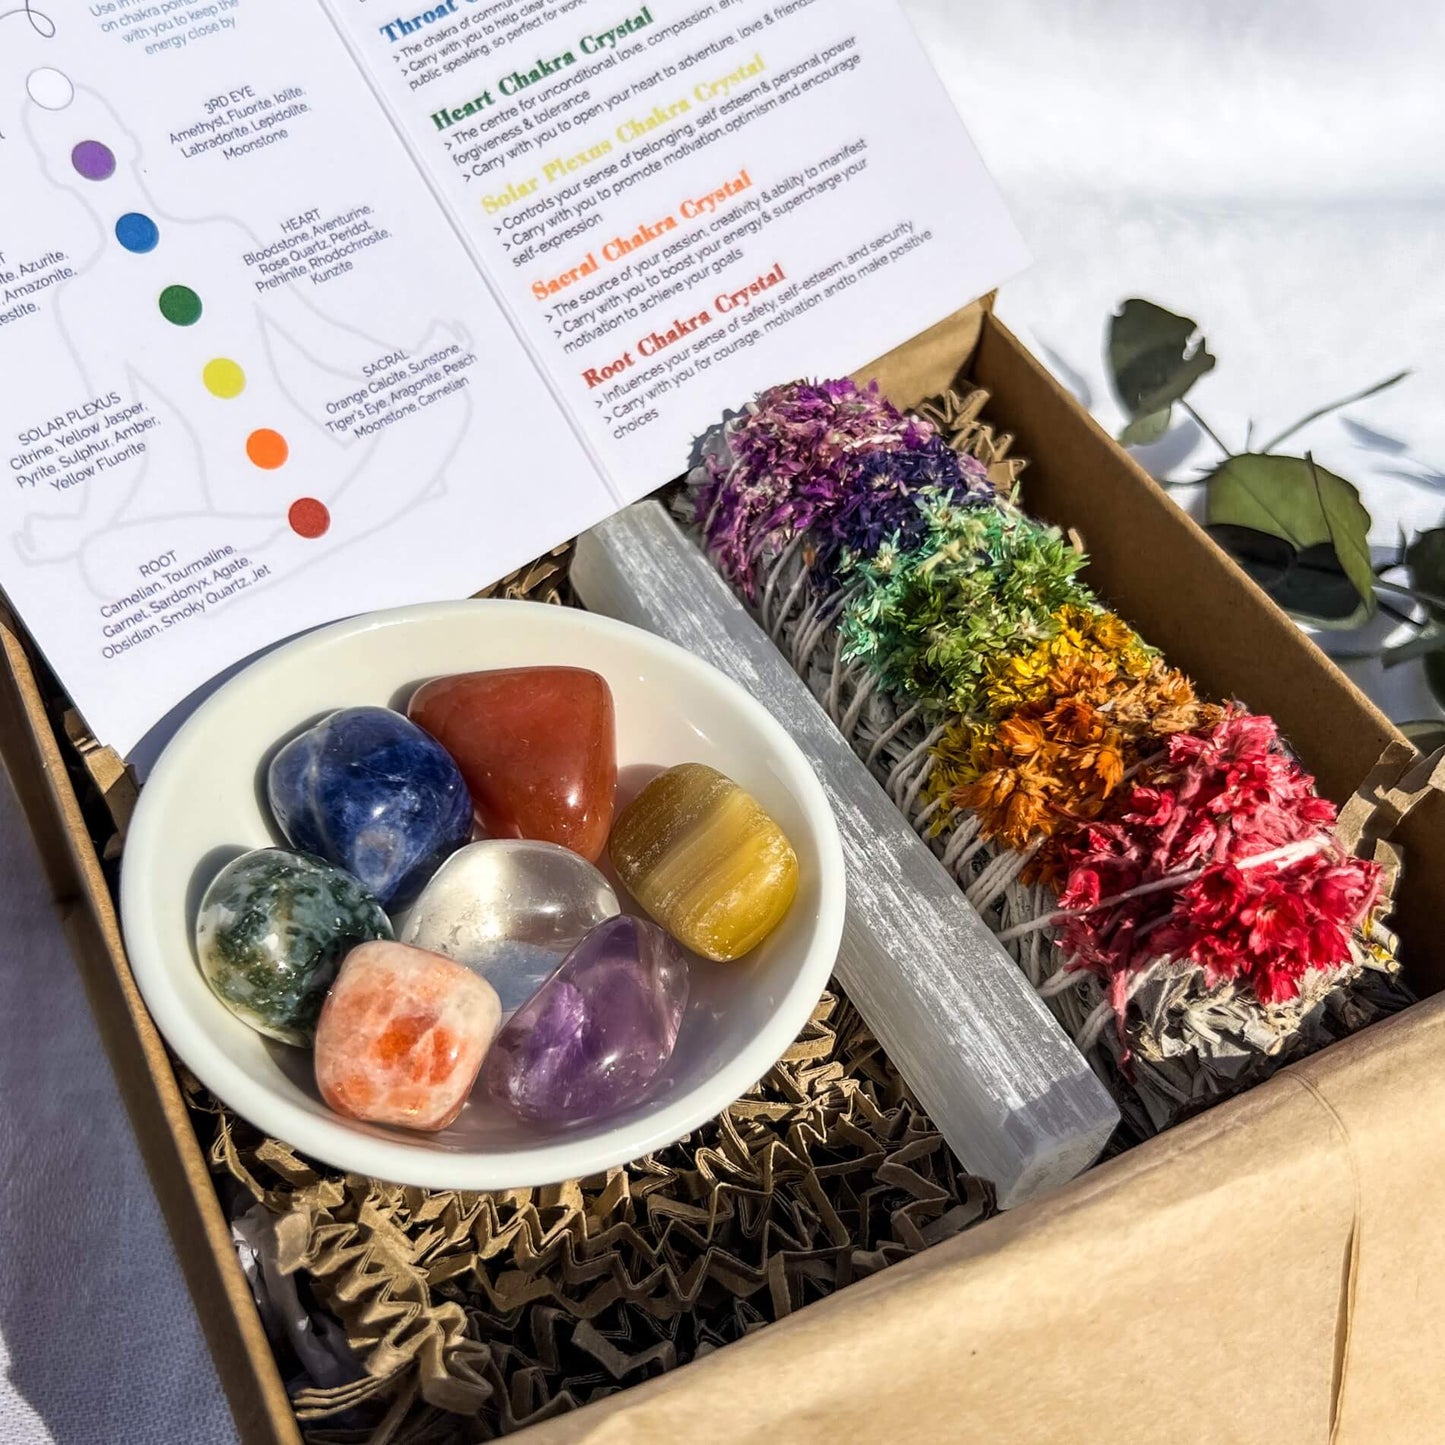 Crystal Chakra Healing Gift Box